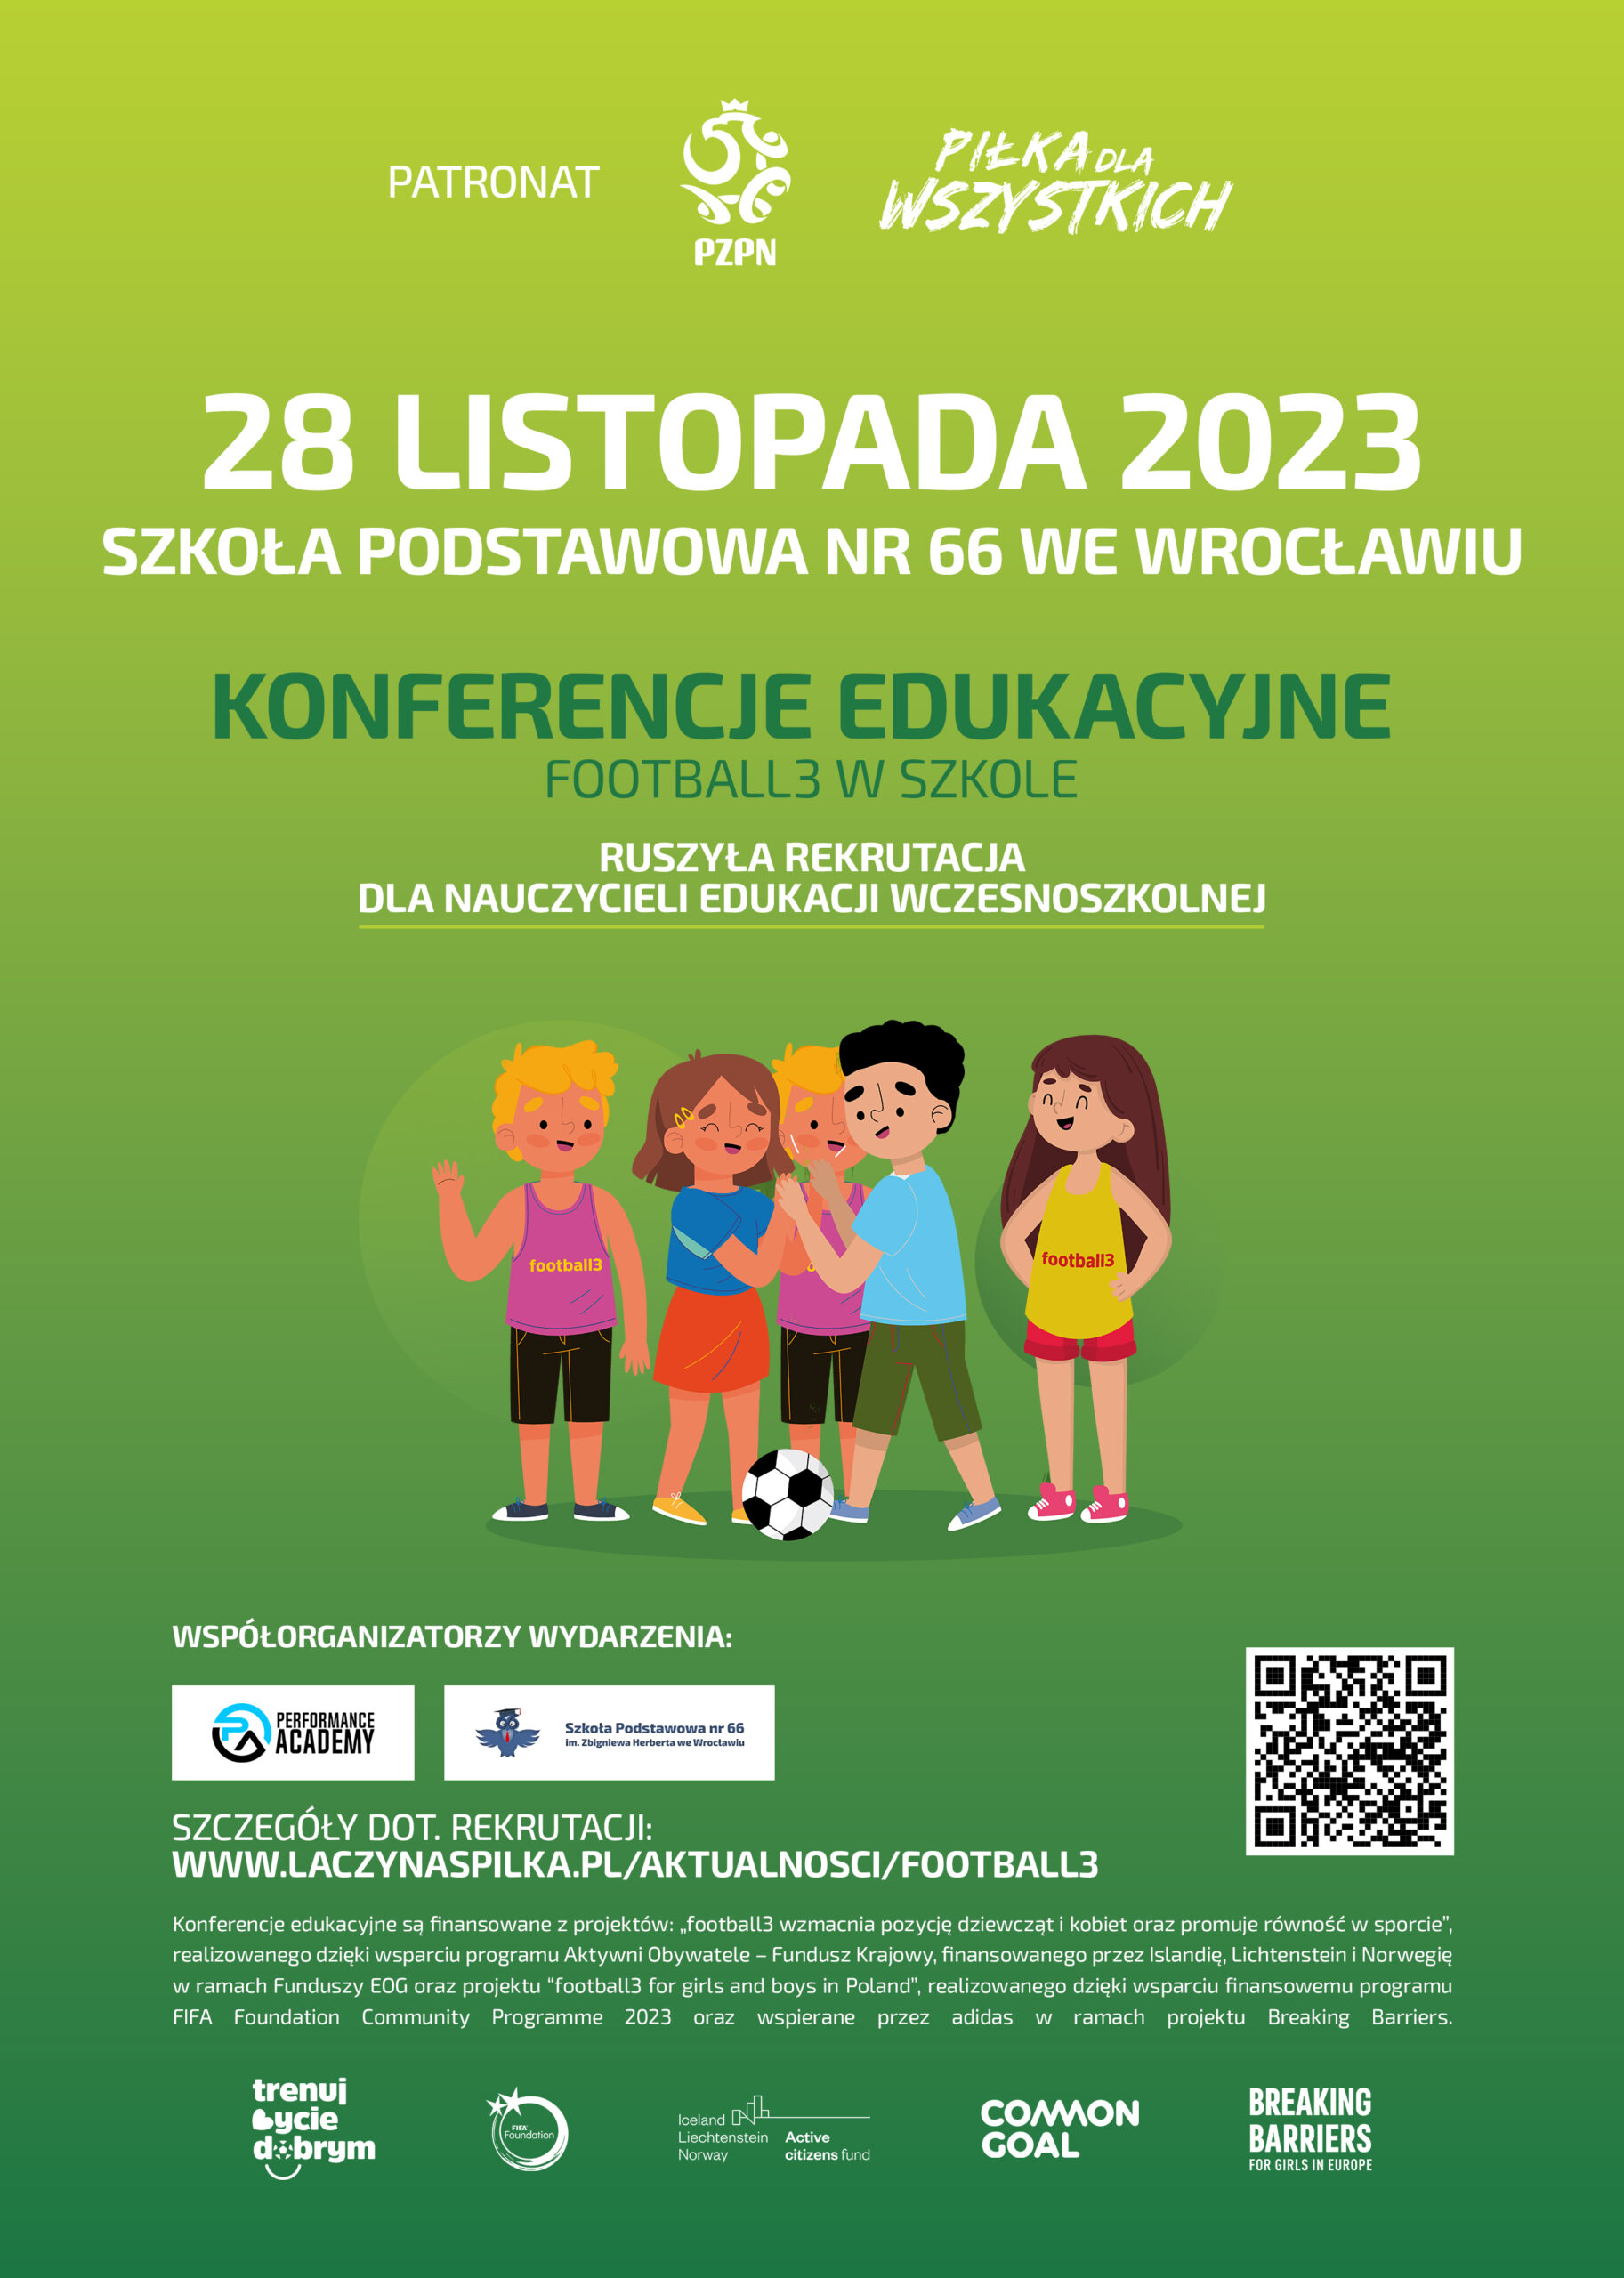 Konferencje edukacyjne „football3 w szkole” – wciąż można zgłosić swój udział